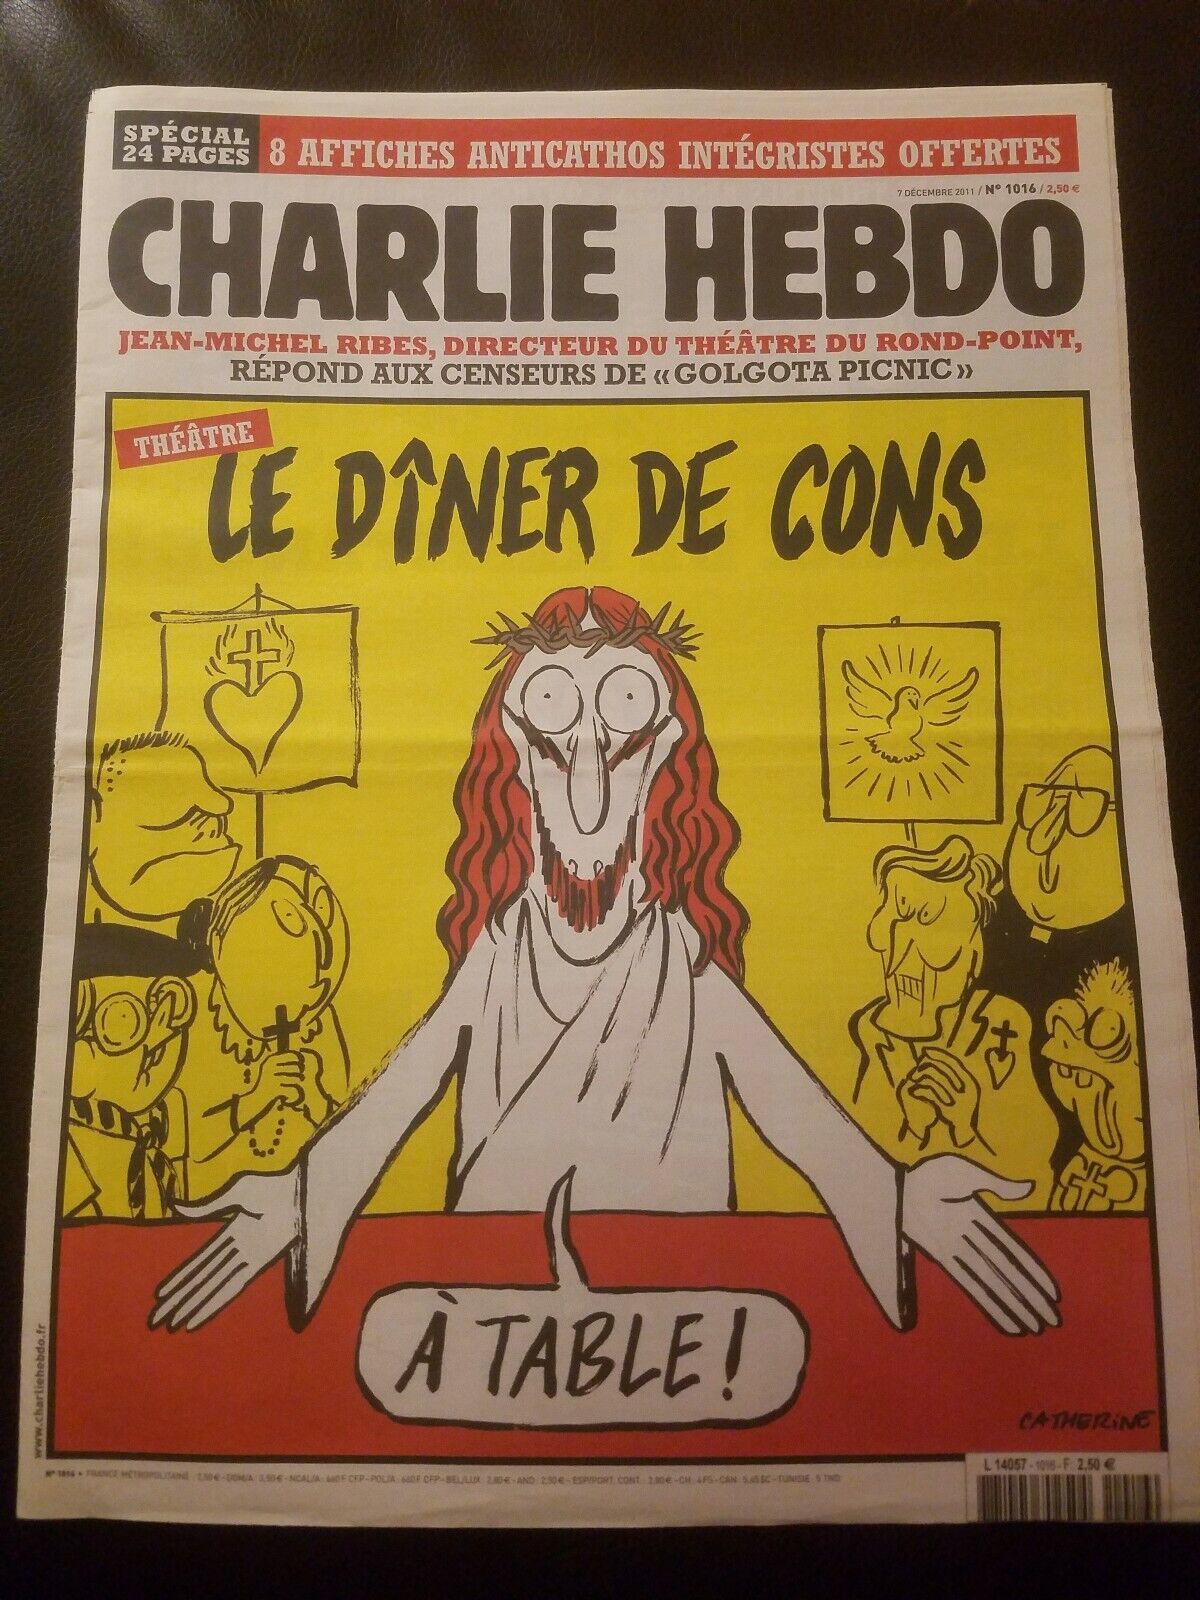 CHARLIE HEBDO No 1016 Original French Magazine Dinner of Cons VERY RARE ISSUE